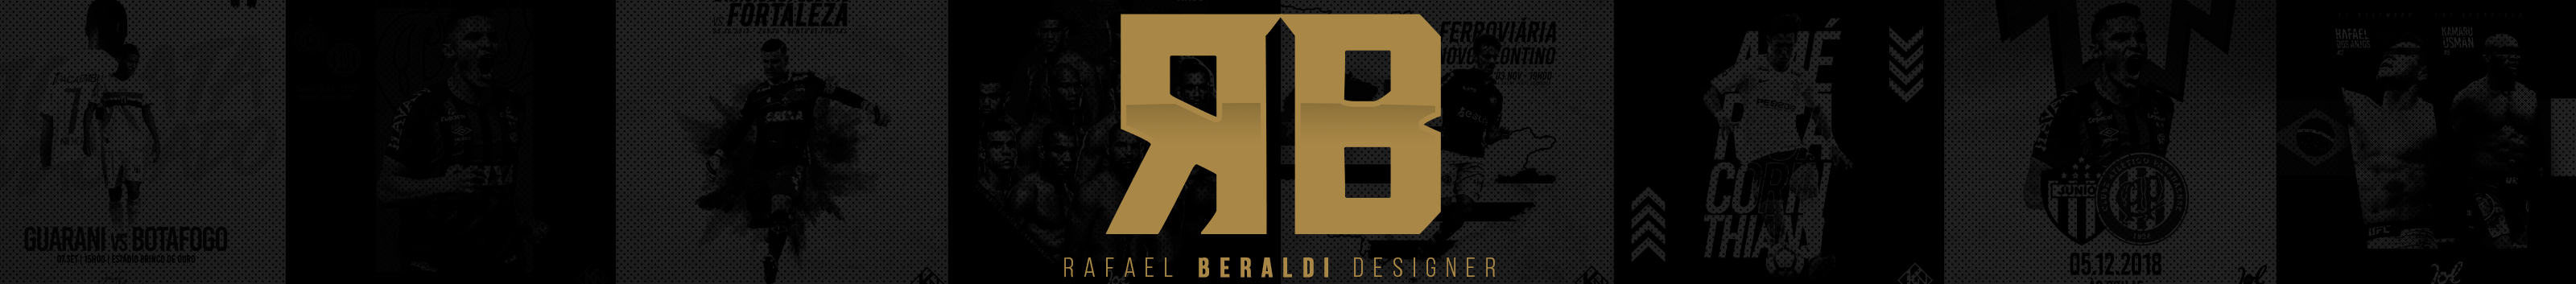 Rafael Beraldi profil başlığı